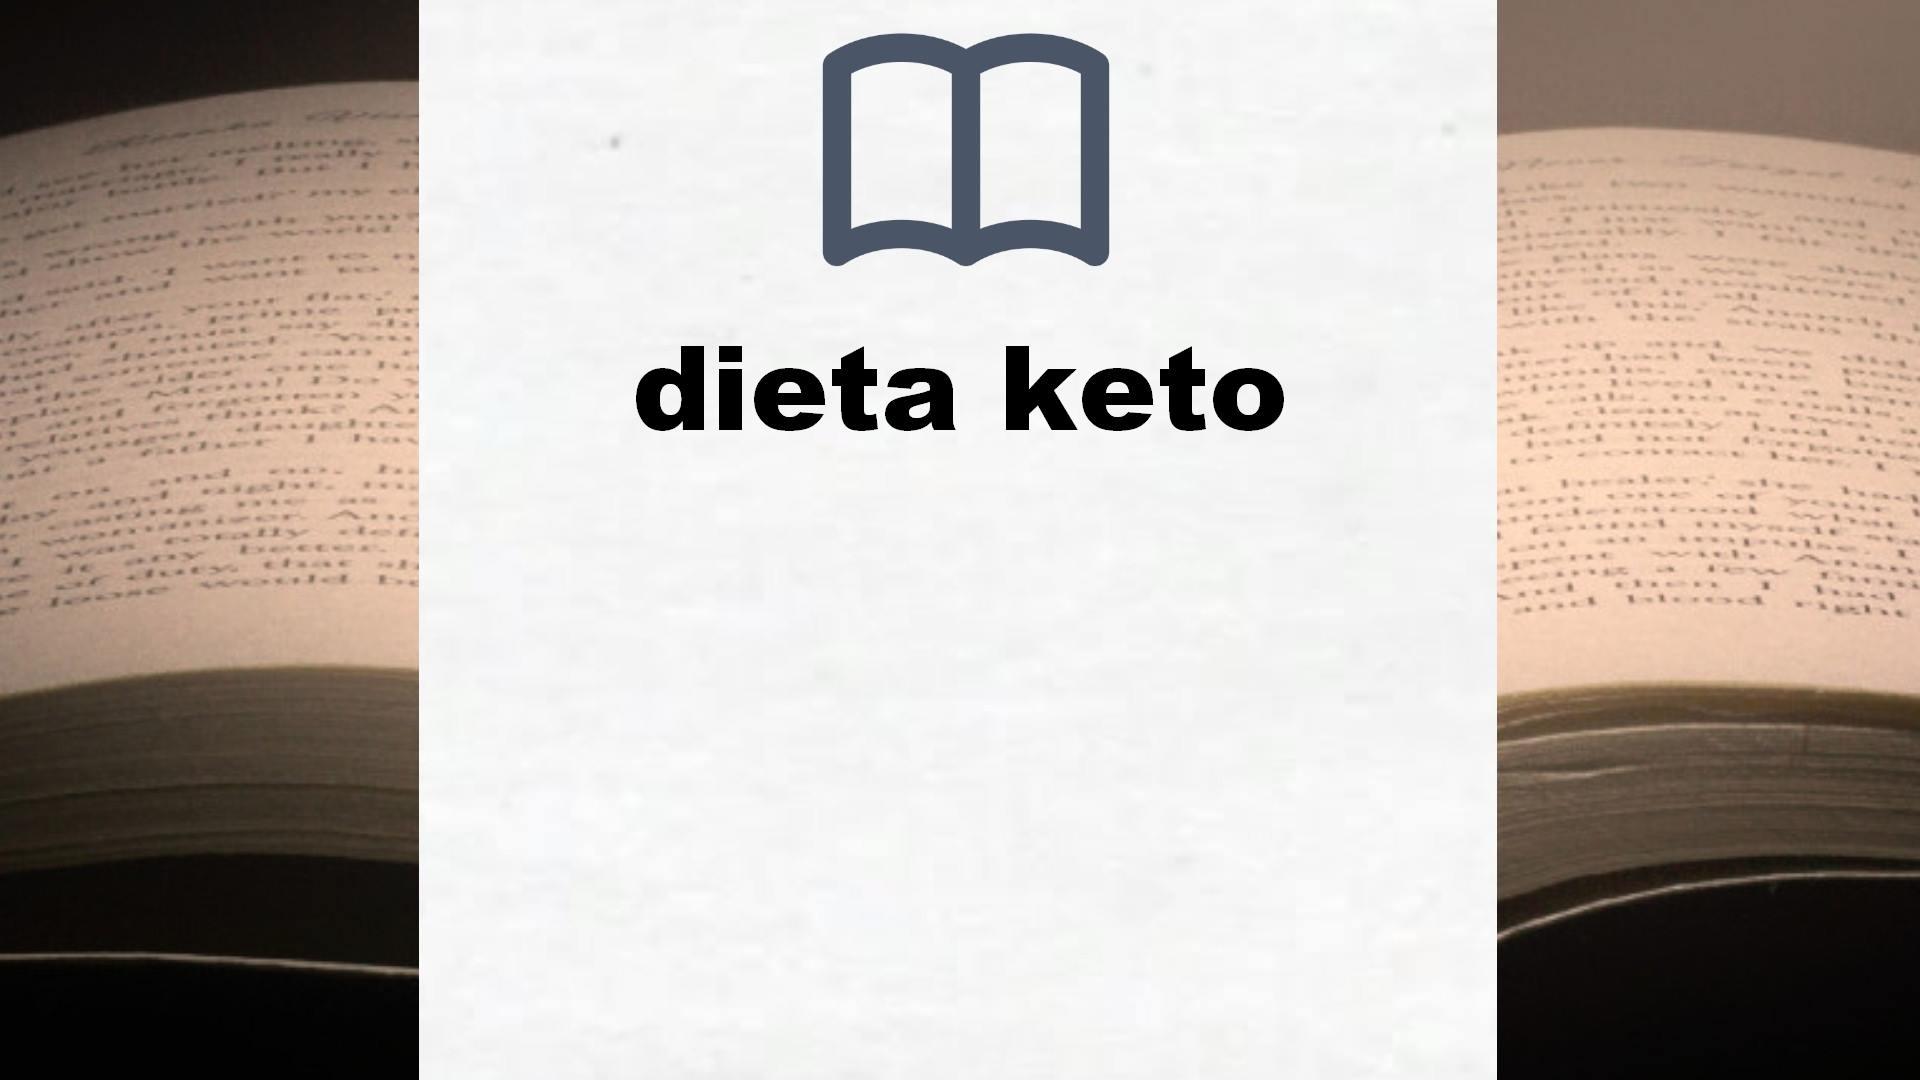 Libros sobre dieta keto